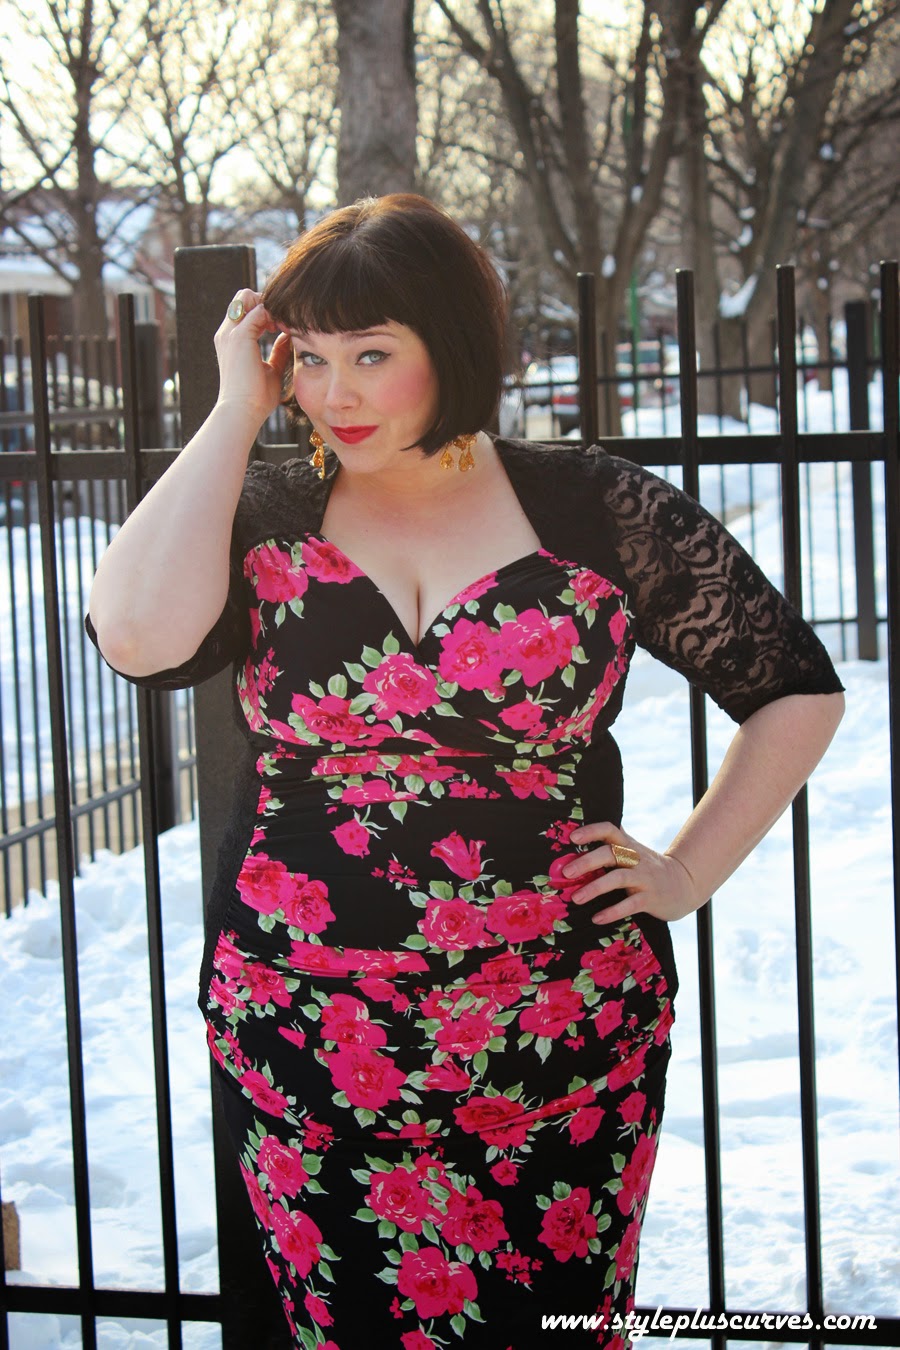 plus size maxi dress Archives  Style Plus Curves - A Chicago Plus Size  Fashion Blog